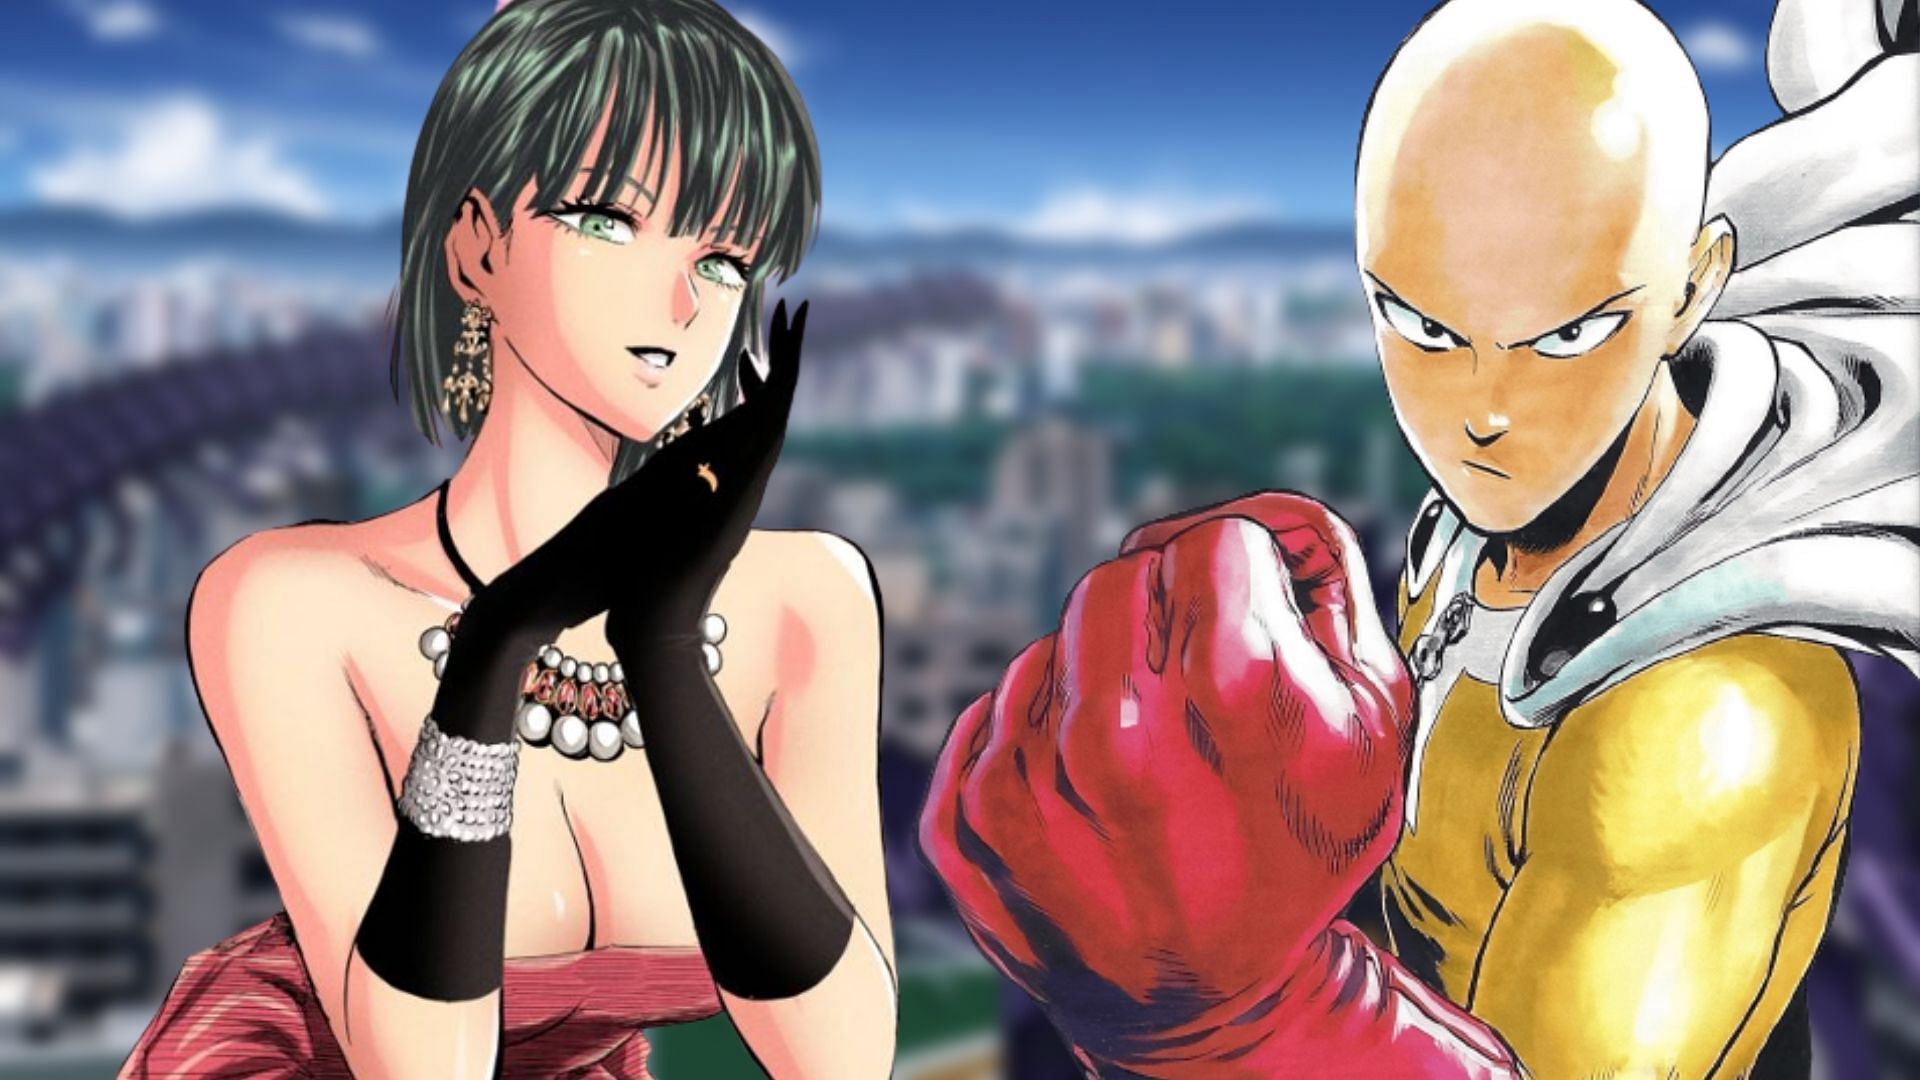 fubuki y tatsumaki  One punch man anime, One punch man manga, One